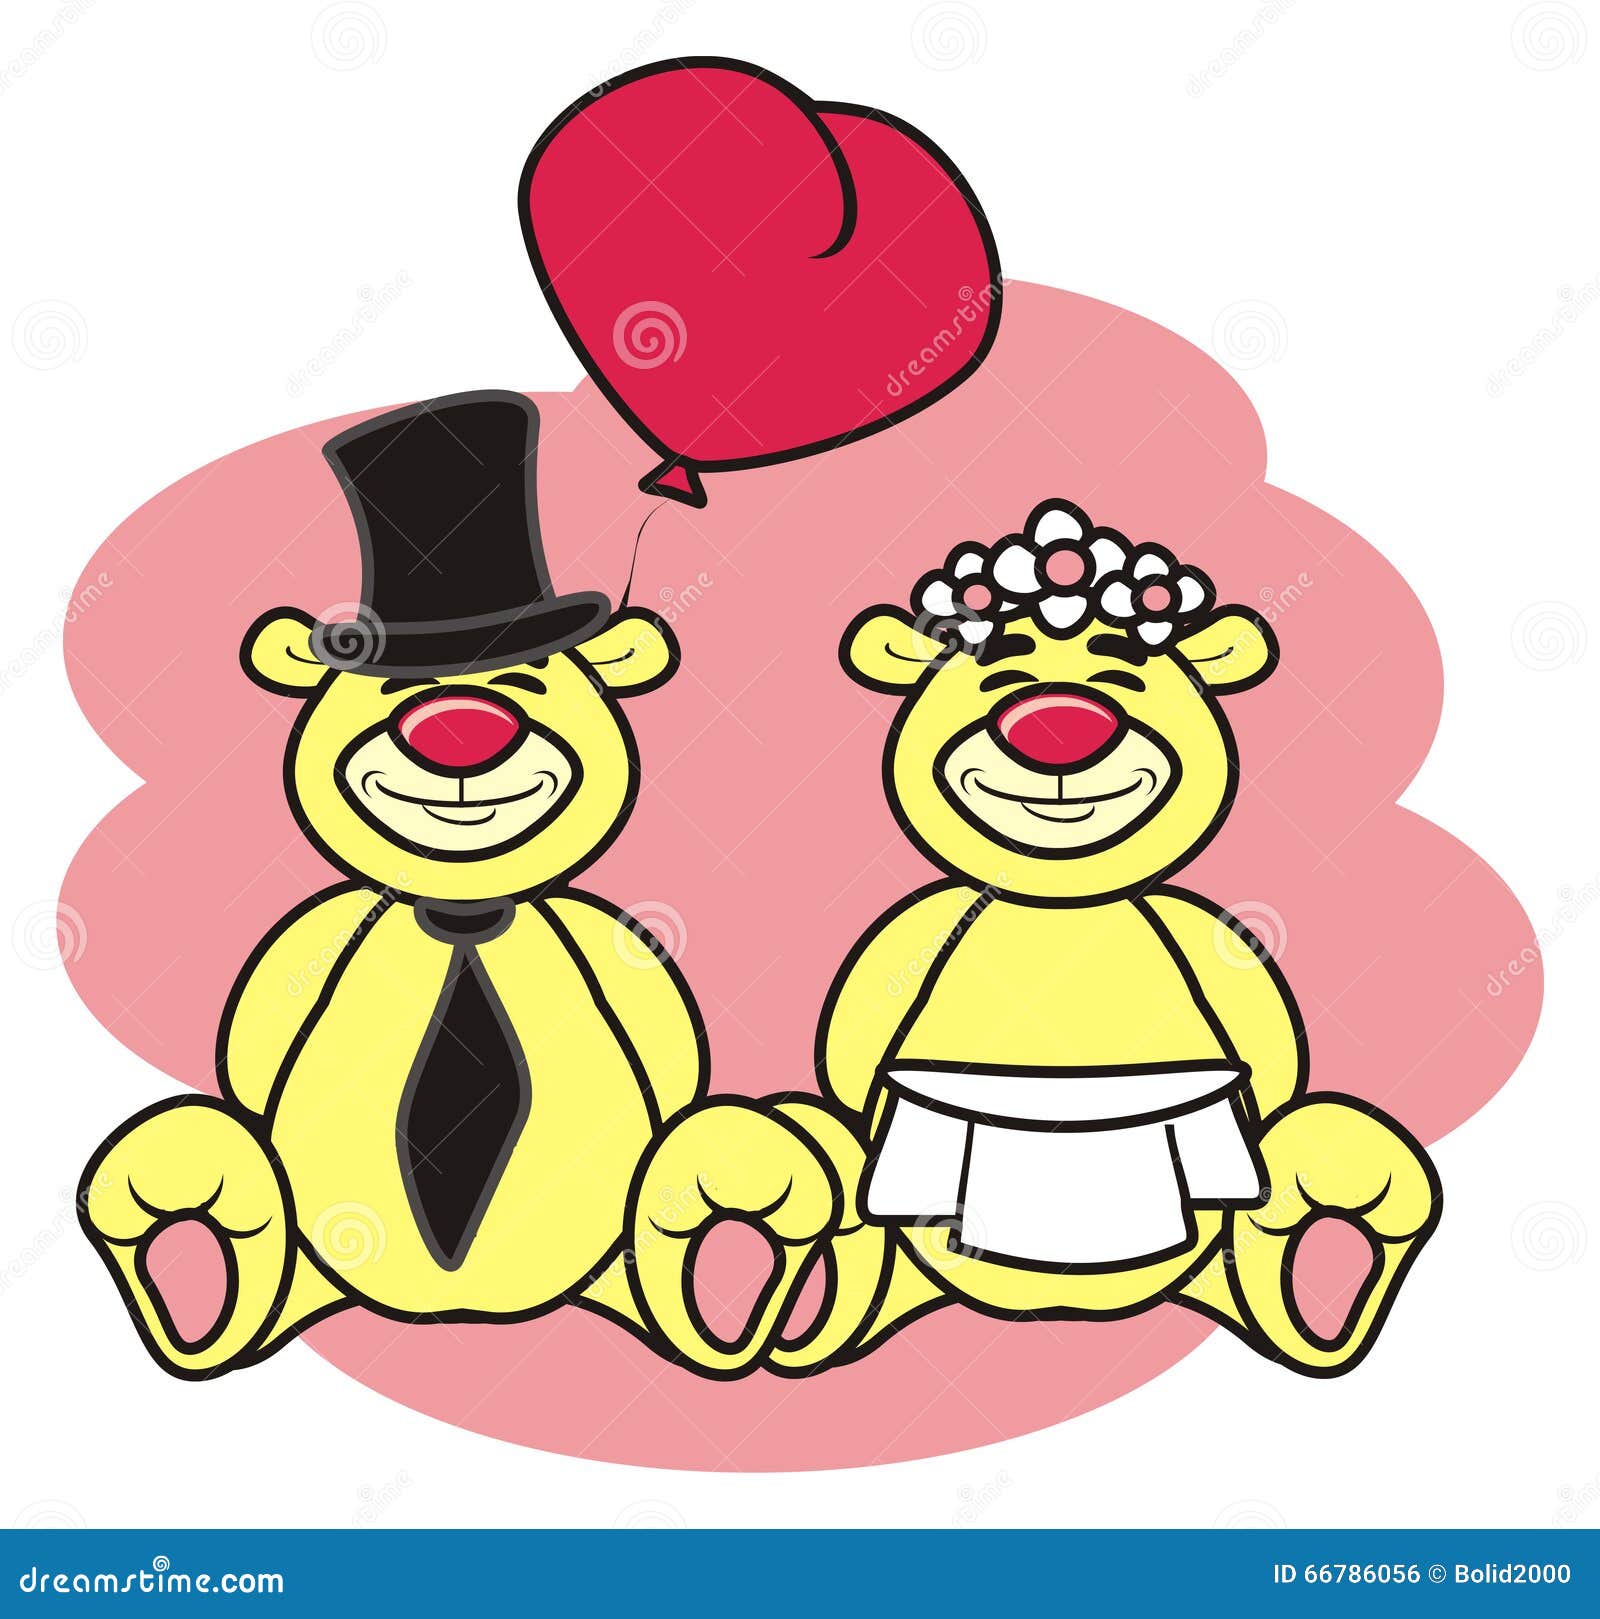 teddy bear bride and groom clipart - photo #23